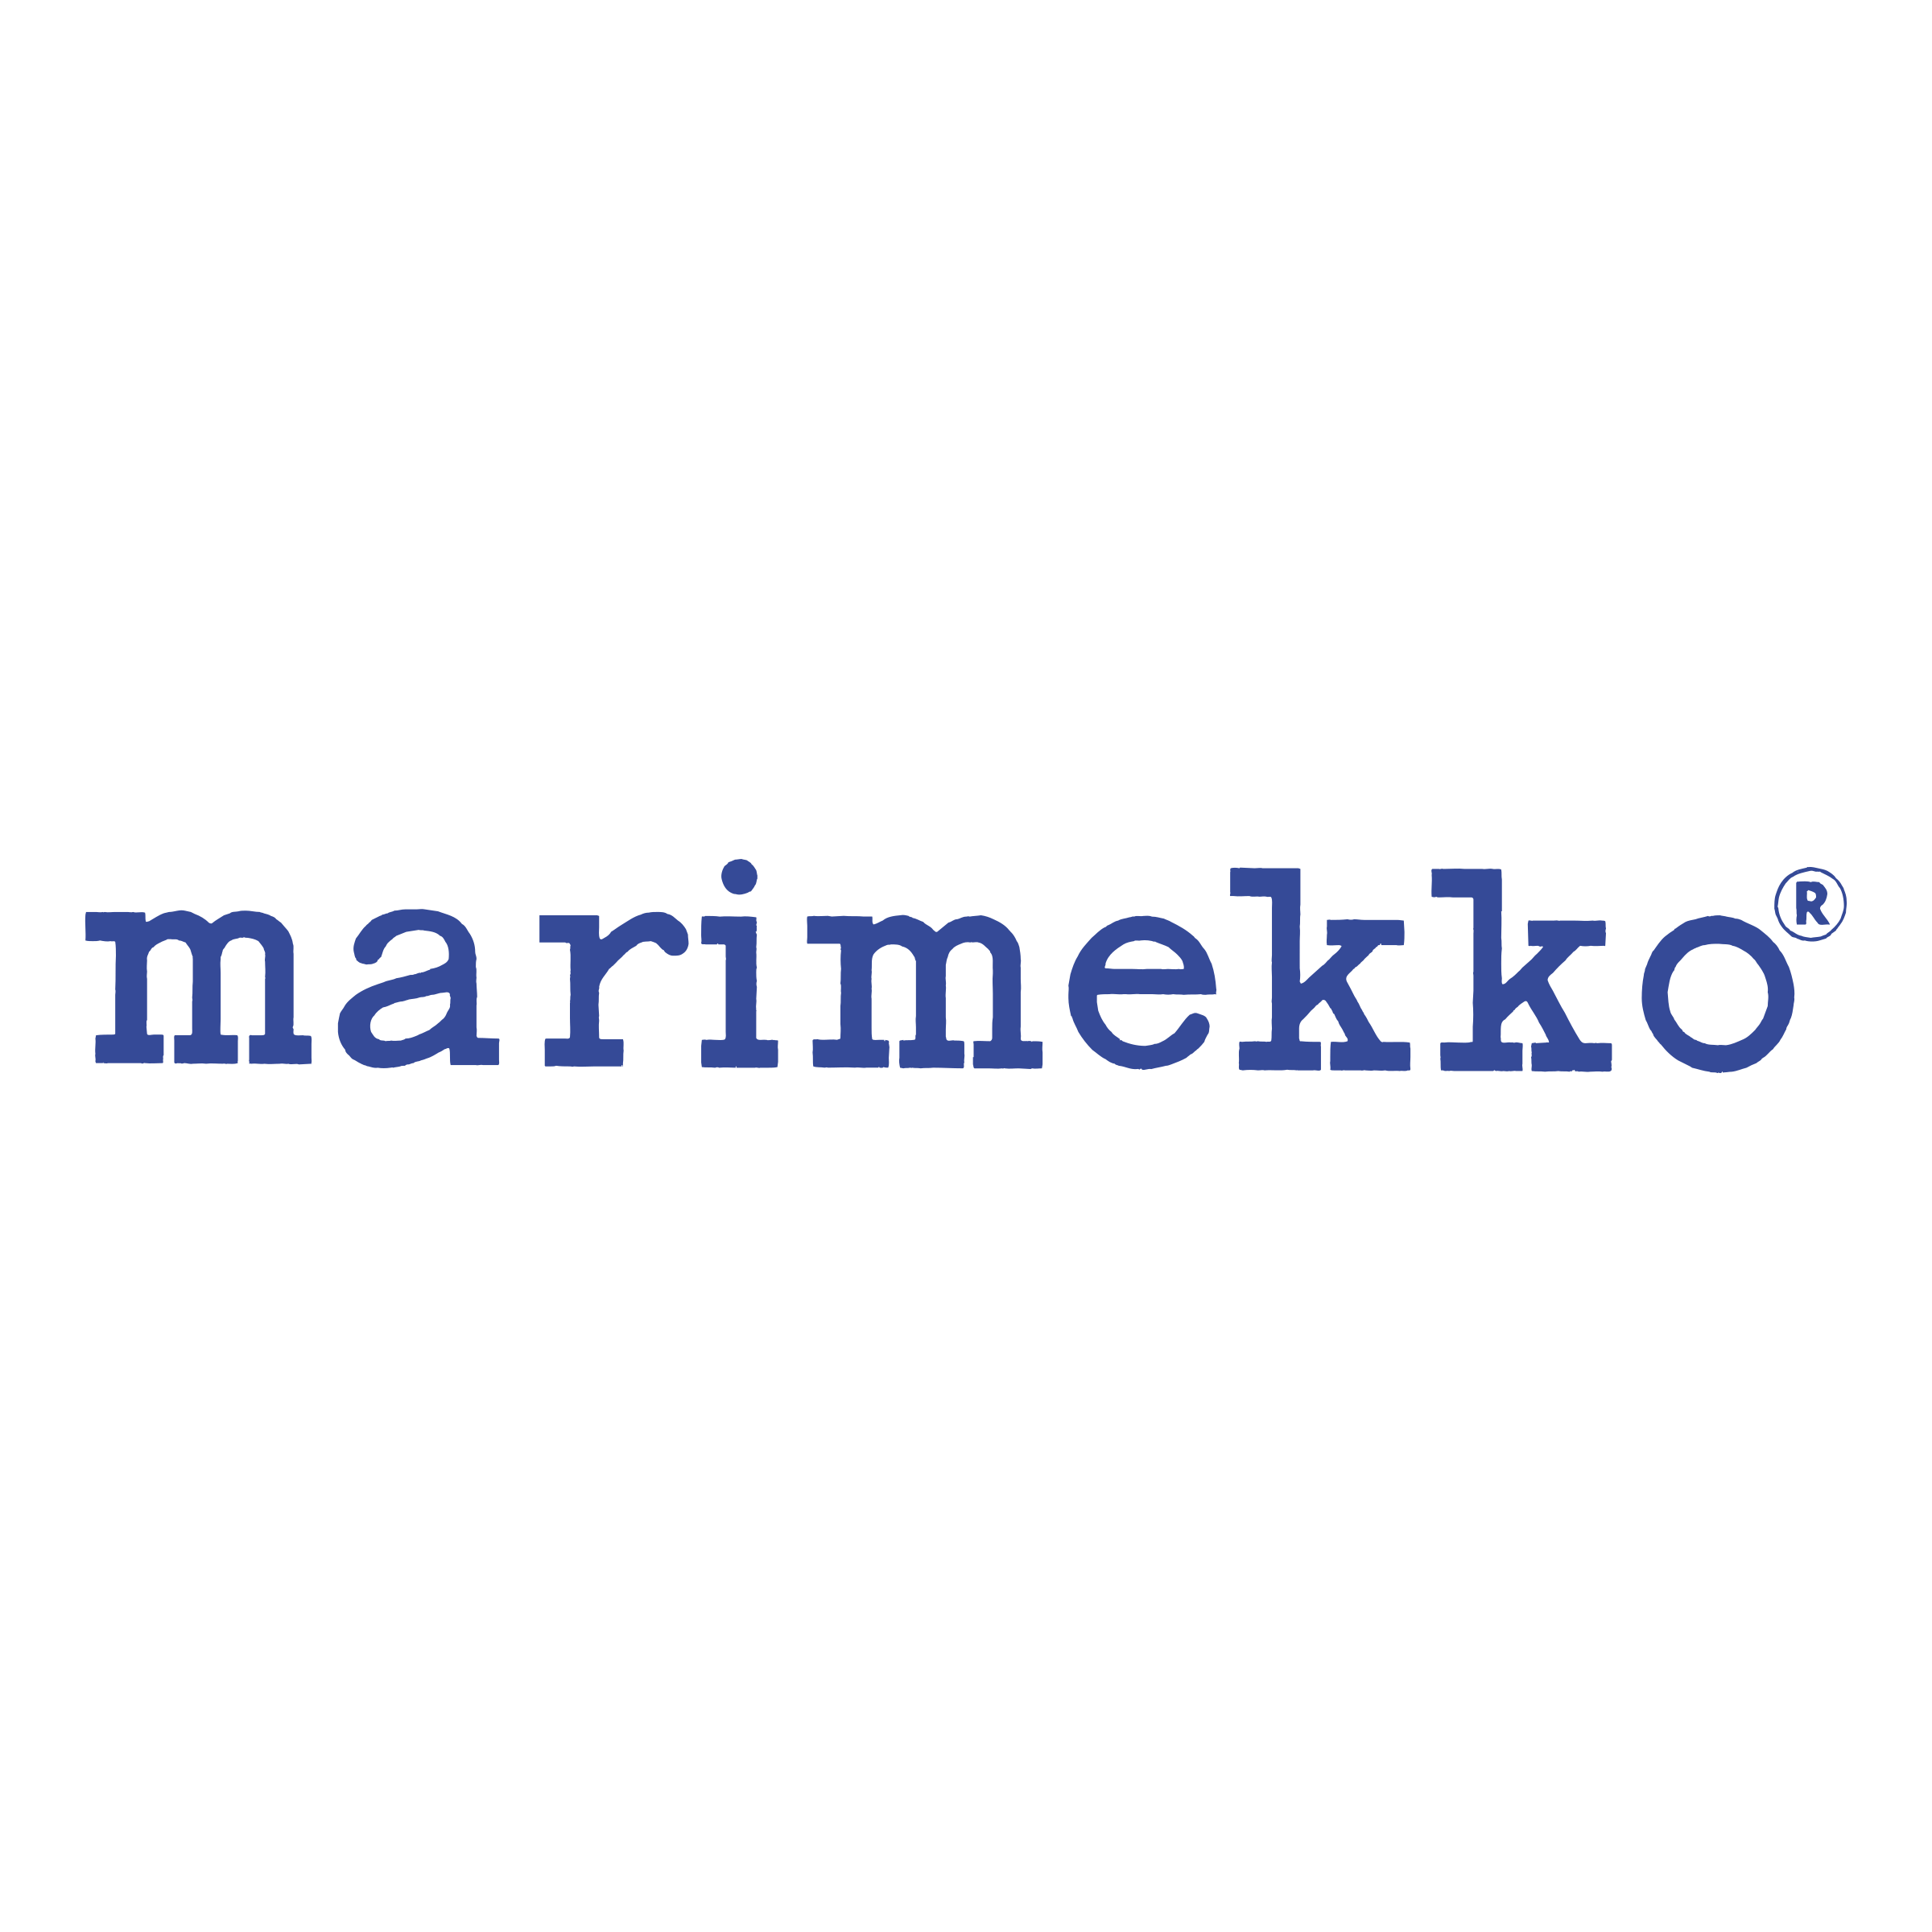 marimekko-logo-png-transparent.png